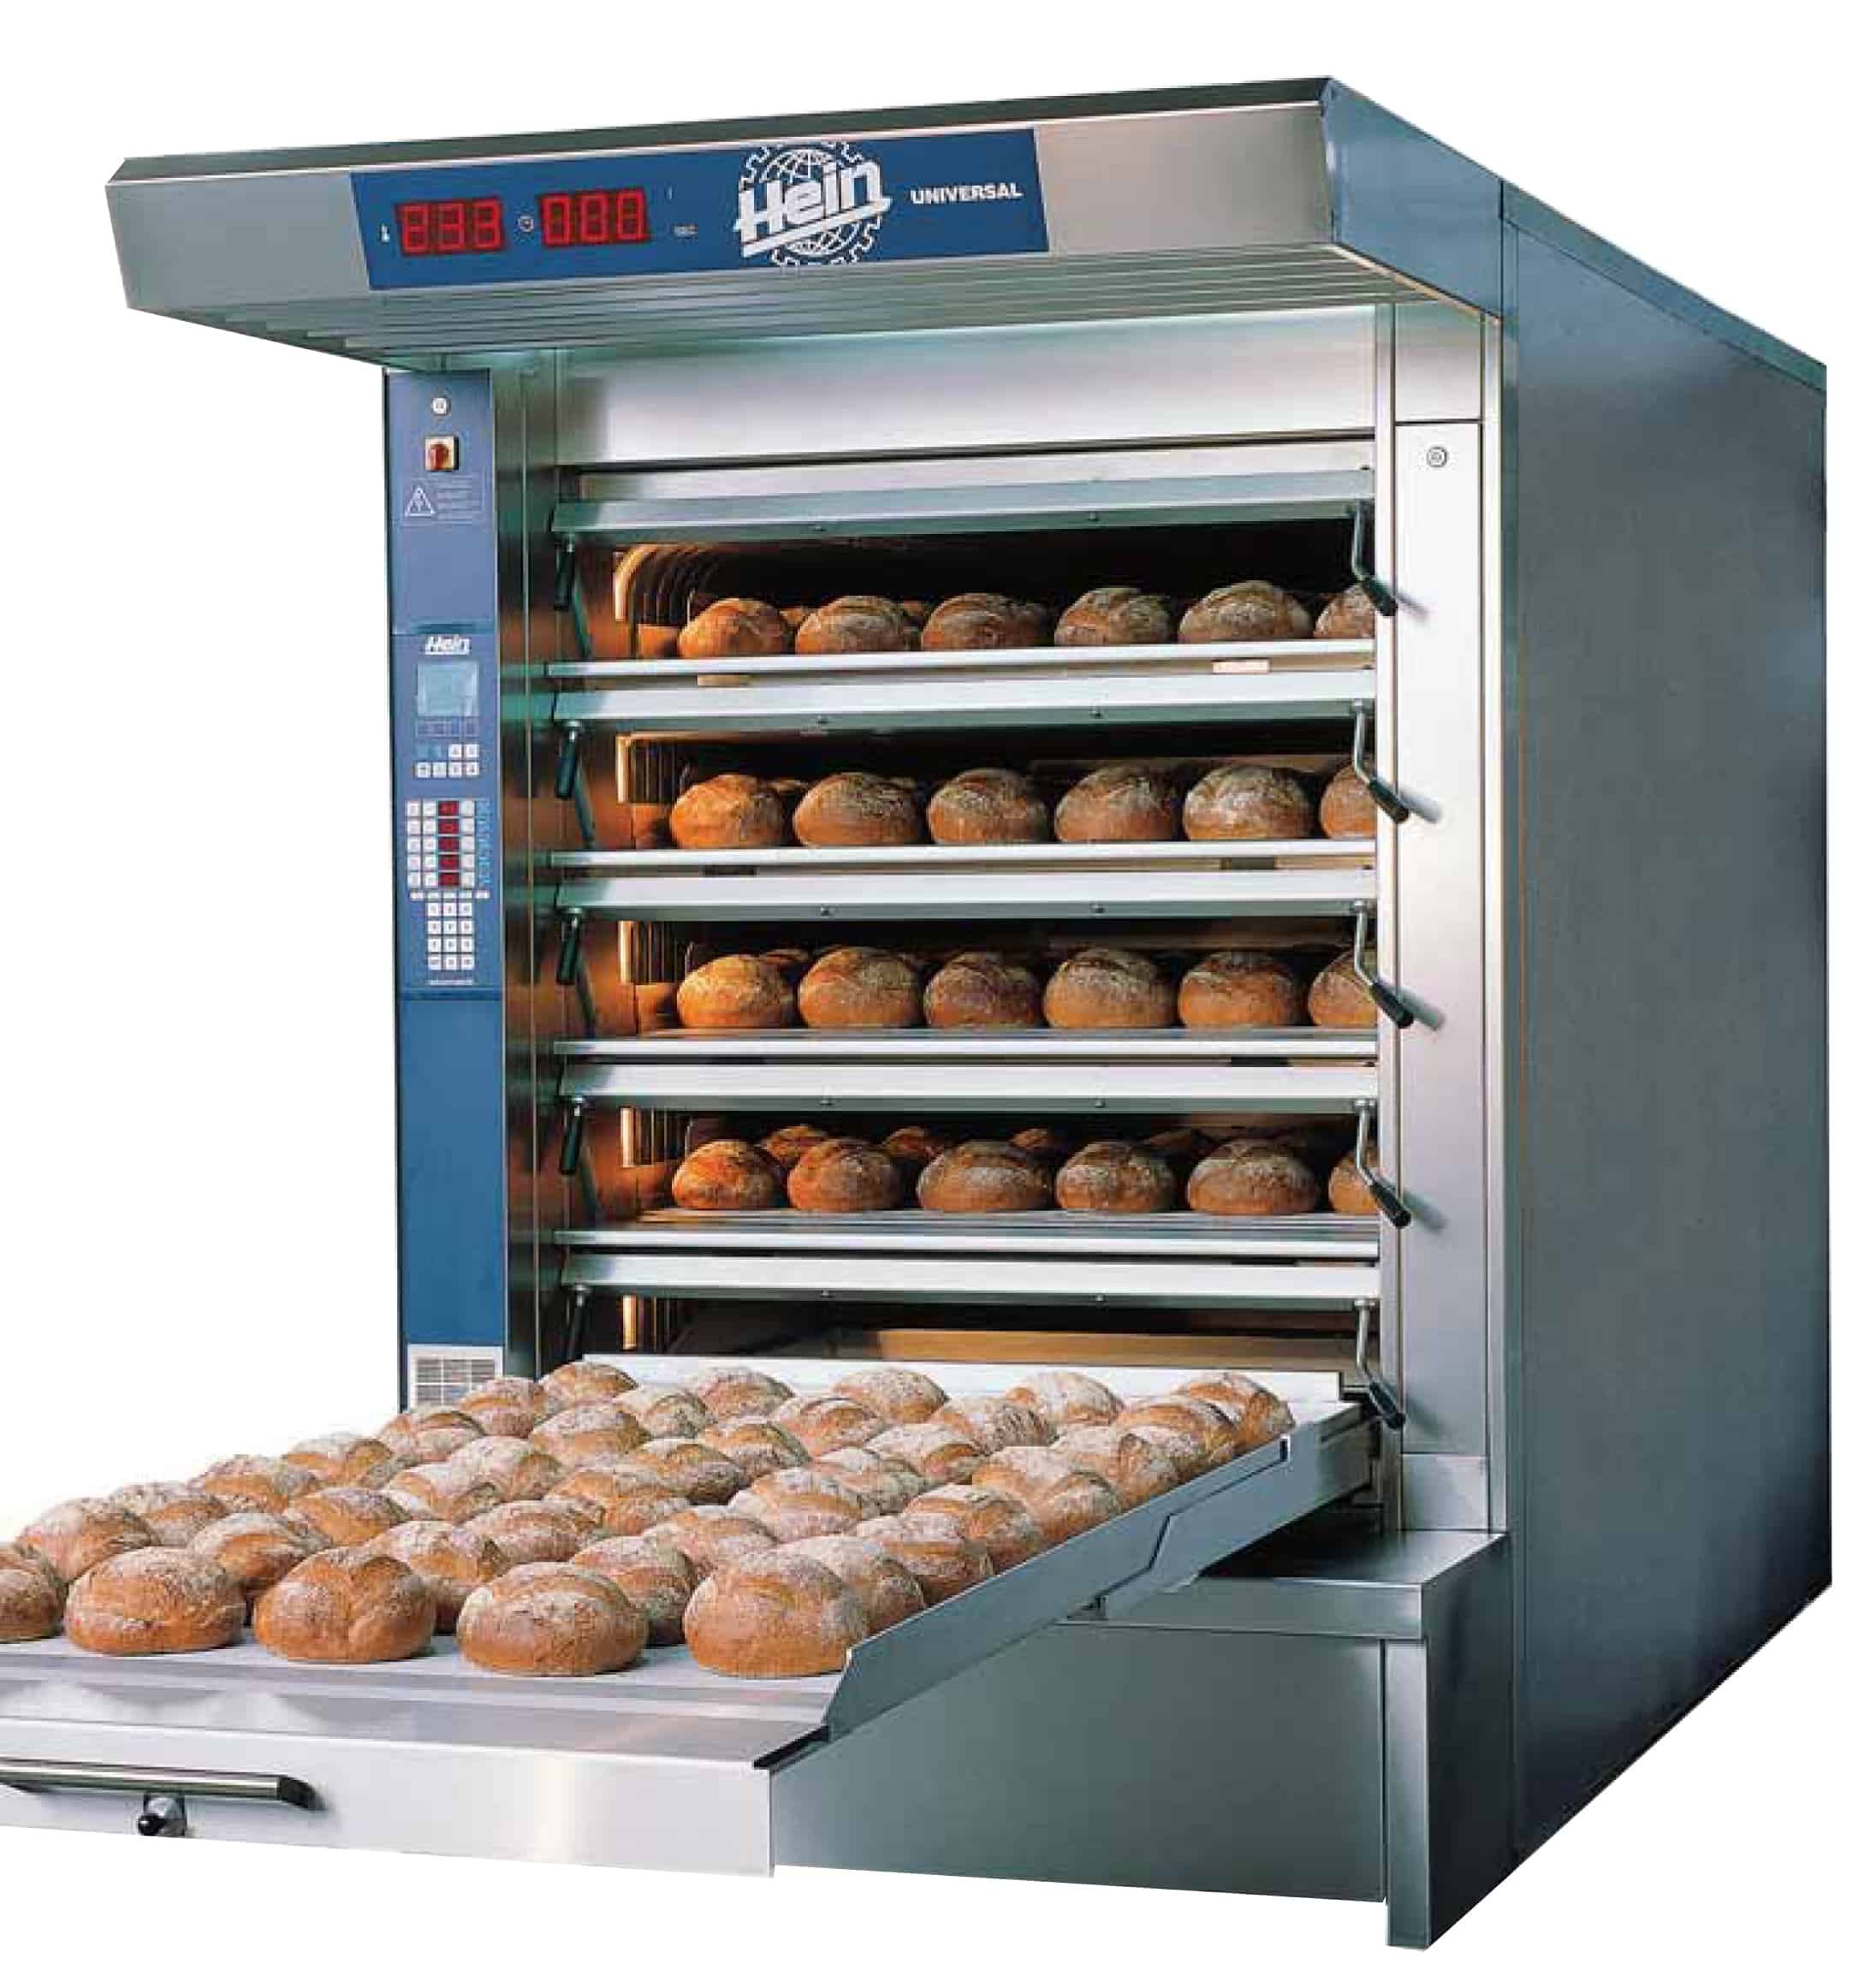 Печь хлеба электрическая. Промышленная хлебопекарная печь аббат. Электропечь для выпечки хлеба 220 вольт. Хлебопекарная печь КПН. Хлебопекарная печь Восход турбо 99.